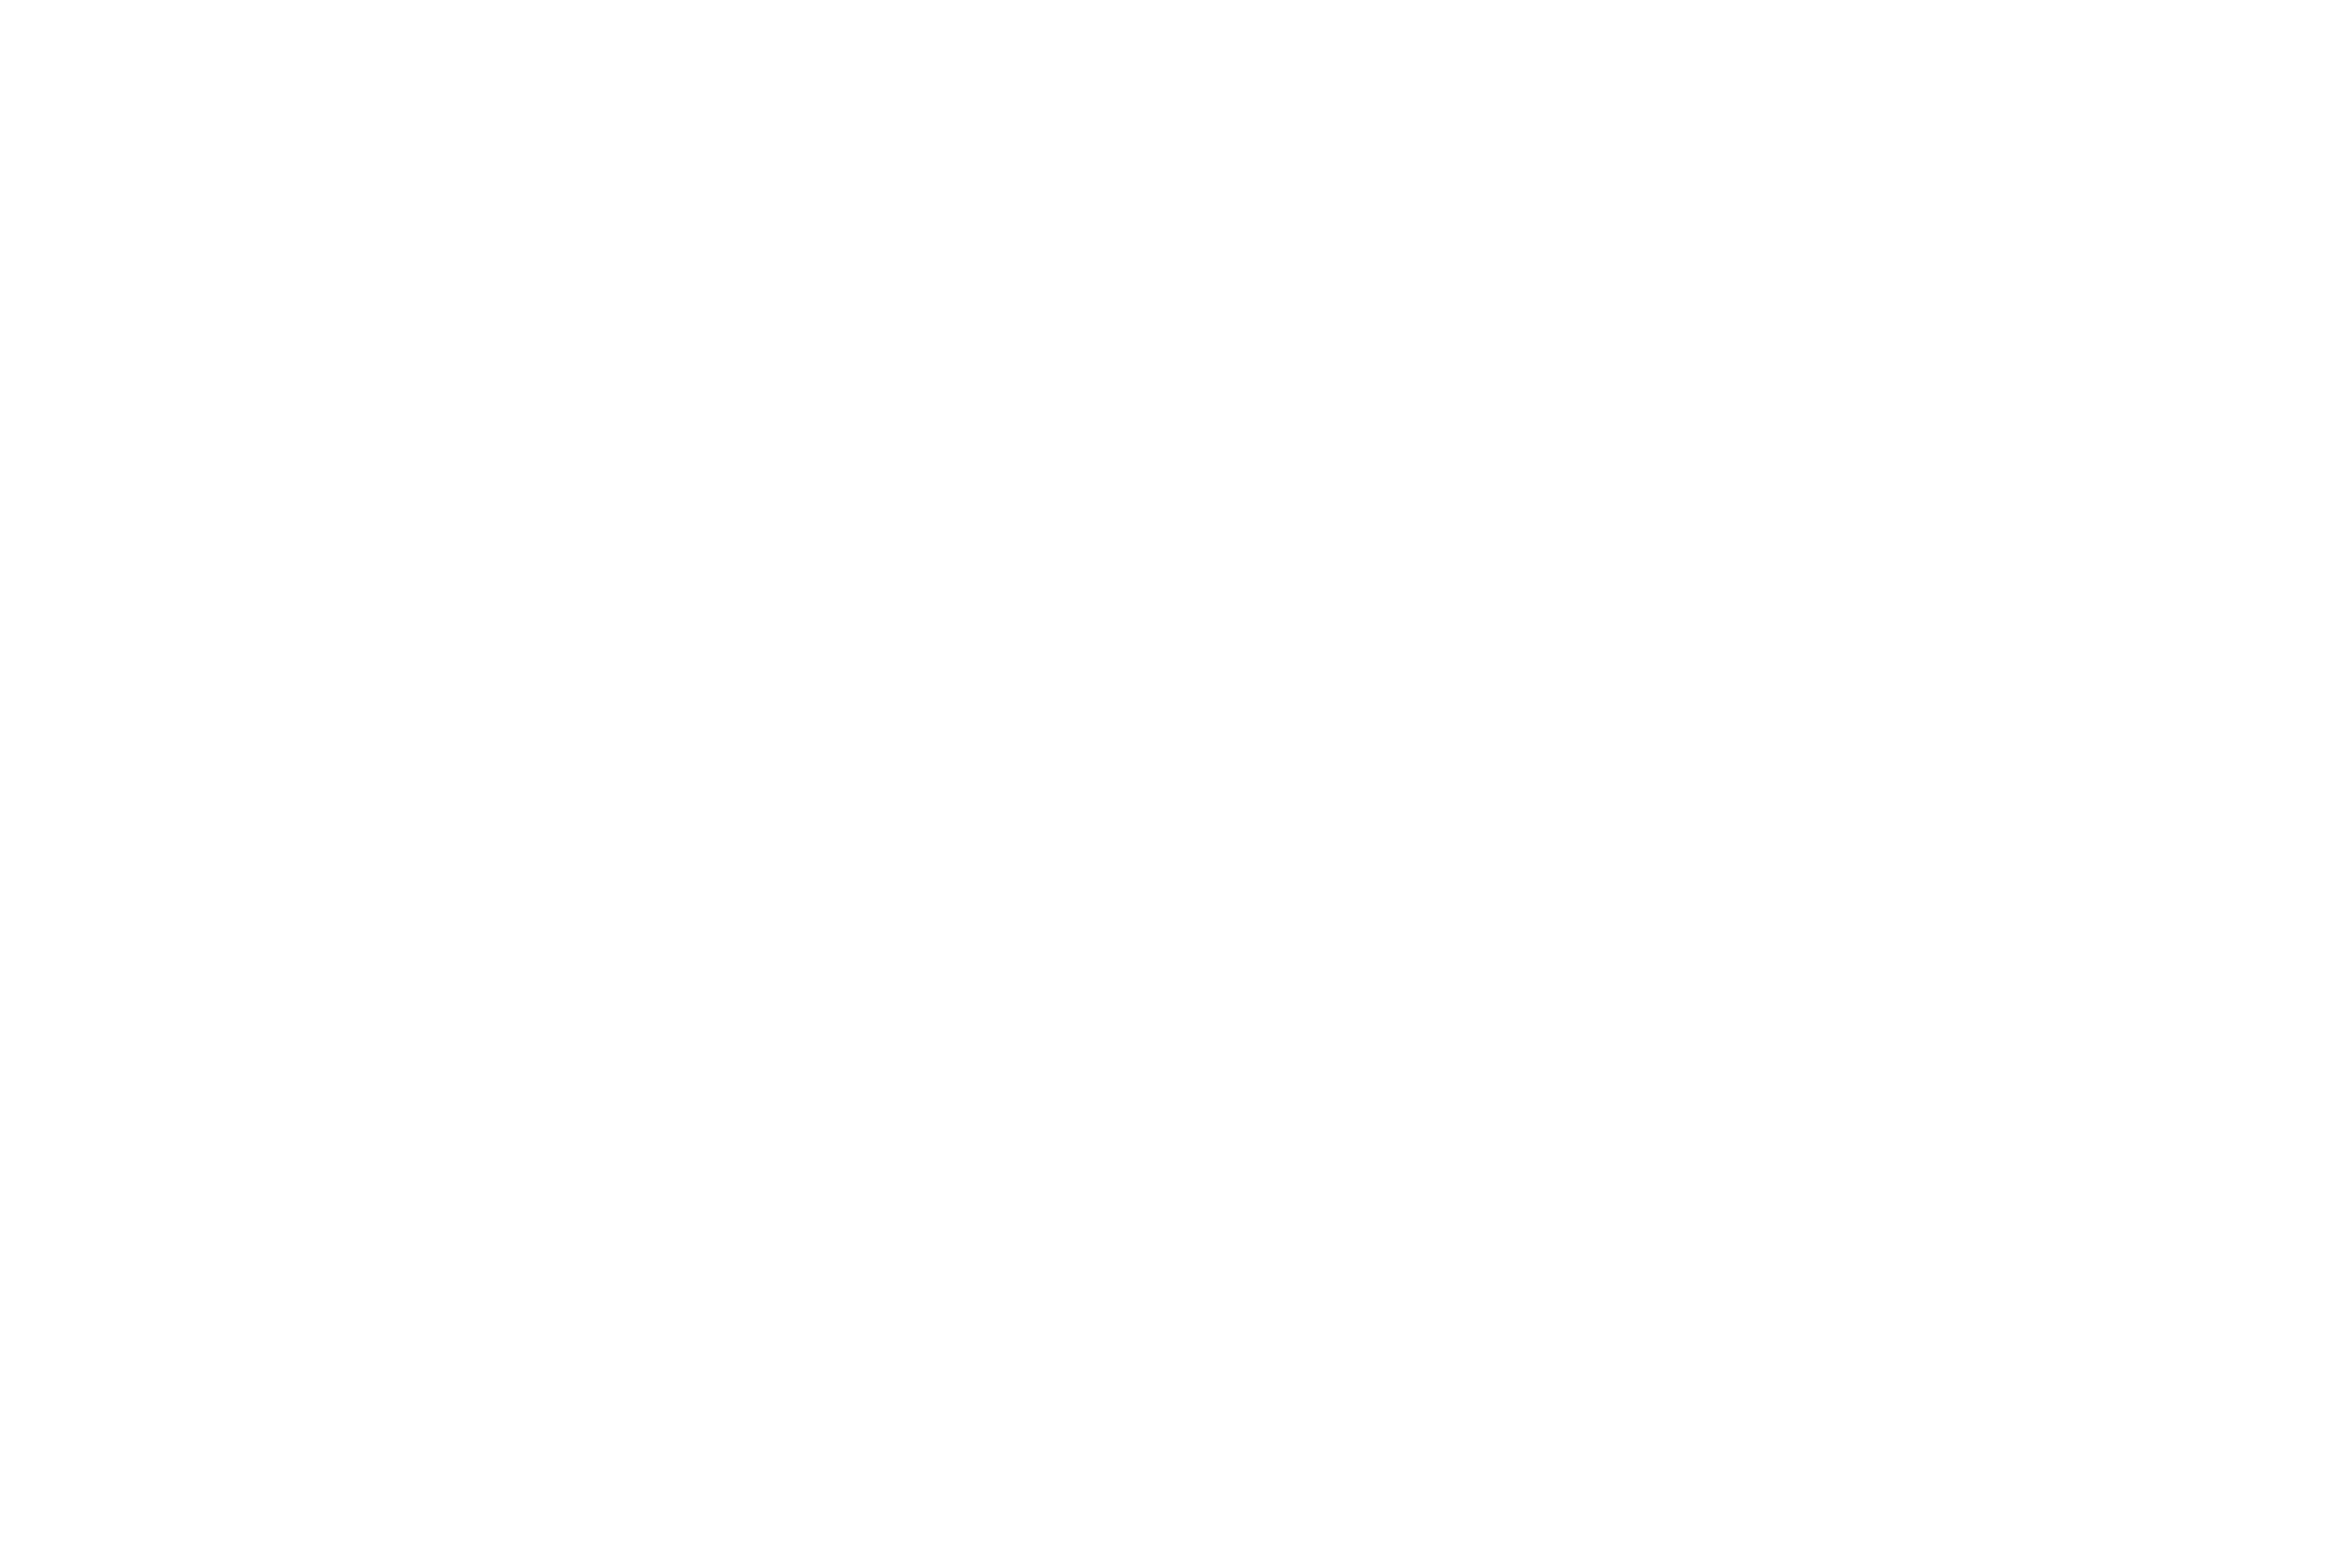 Foodlove Market